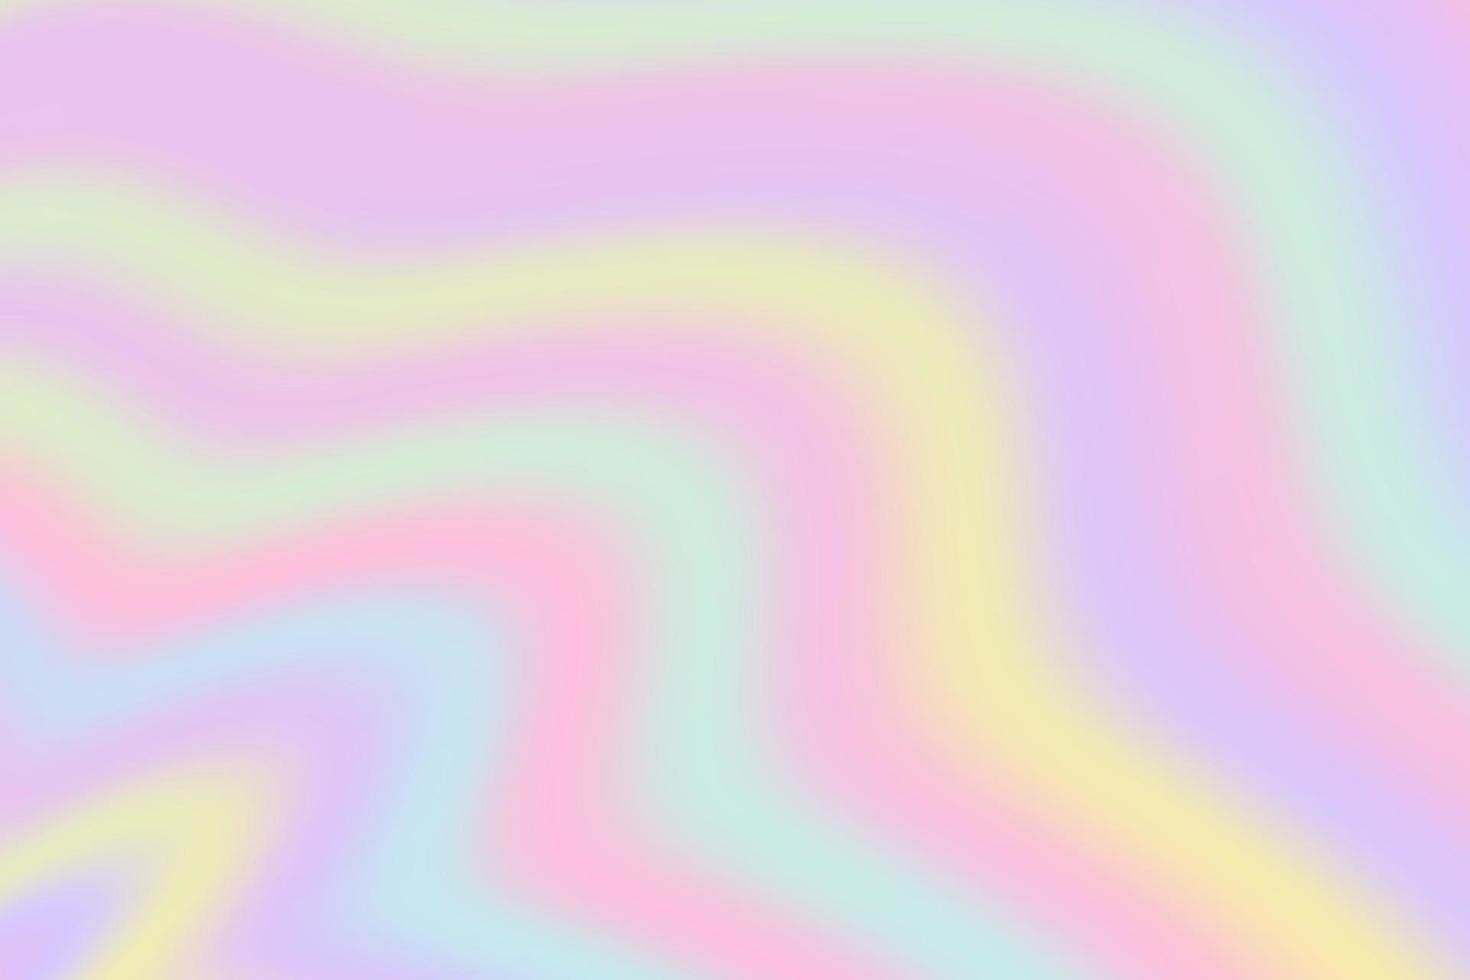 fundo do arco-íris. padrão em tons pastel. céu ondulado de unicórnio multicolorido. vetor